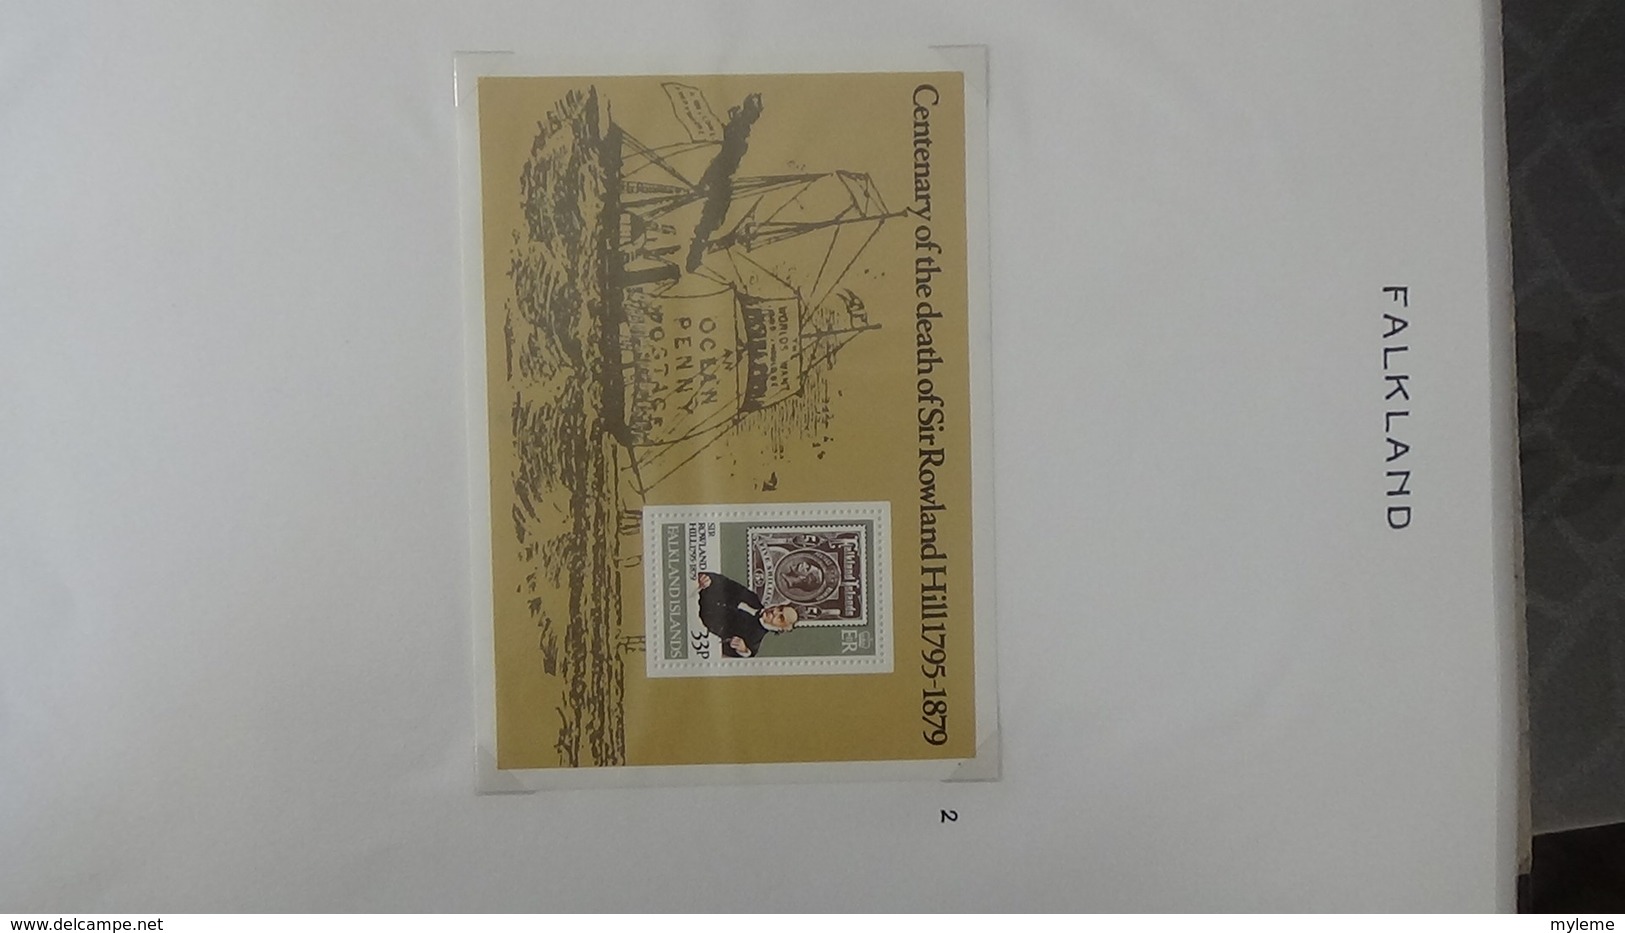 100ème anniversaire de la mort de Sir Rowland Hill en timbres, blocs tous **.  A saisir !!!